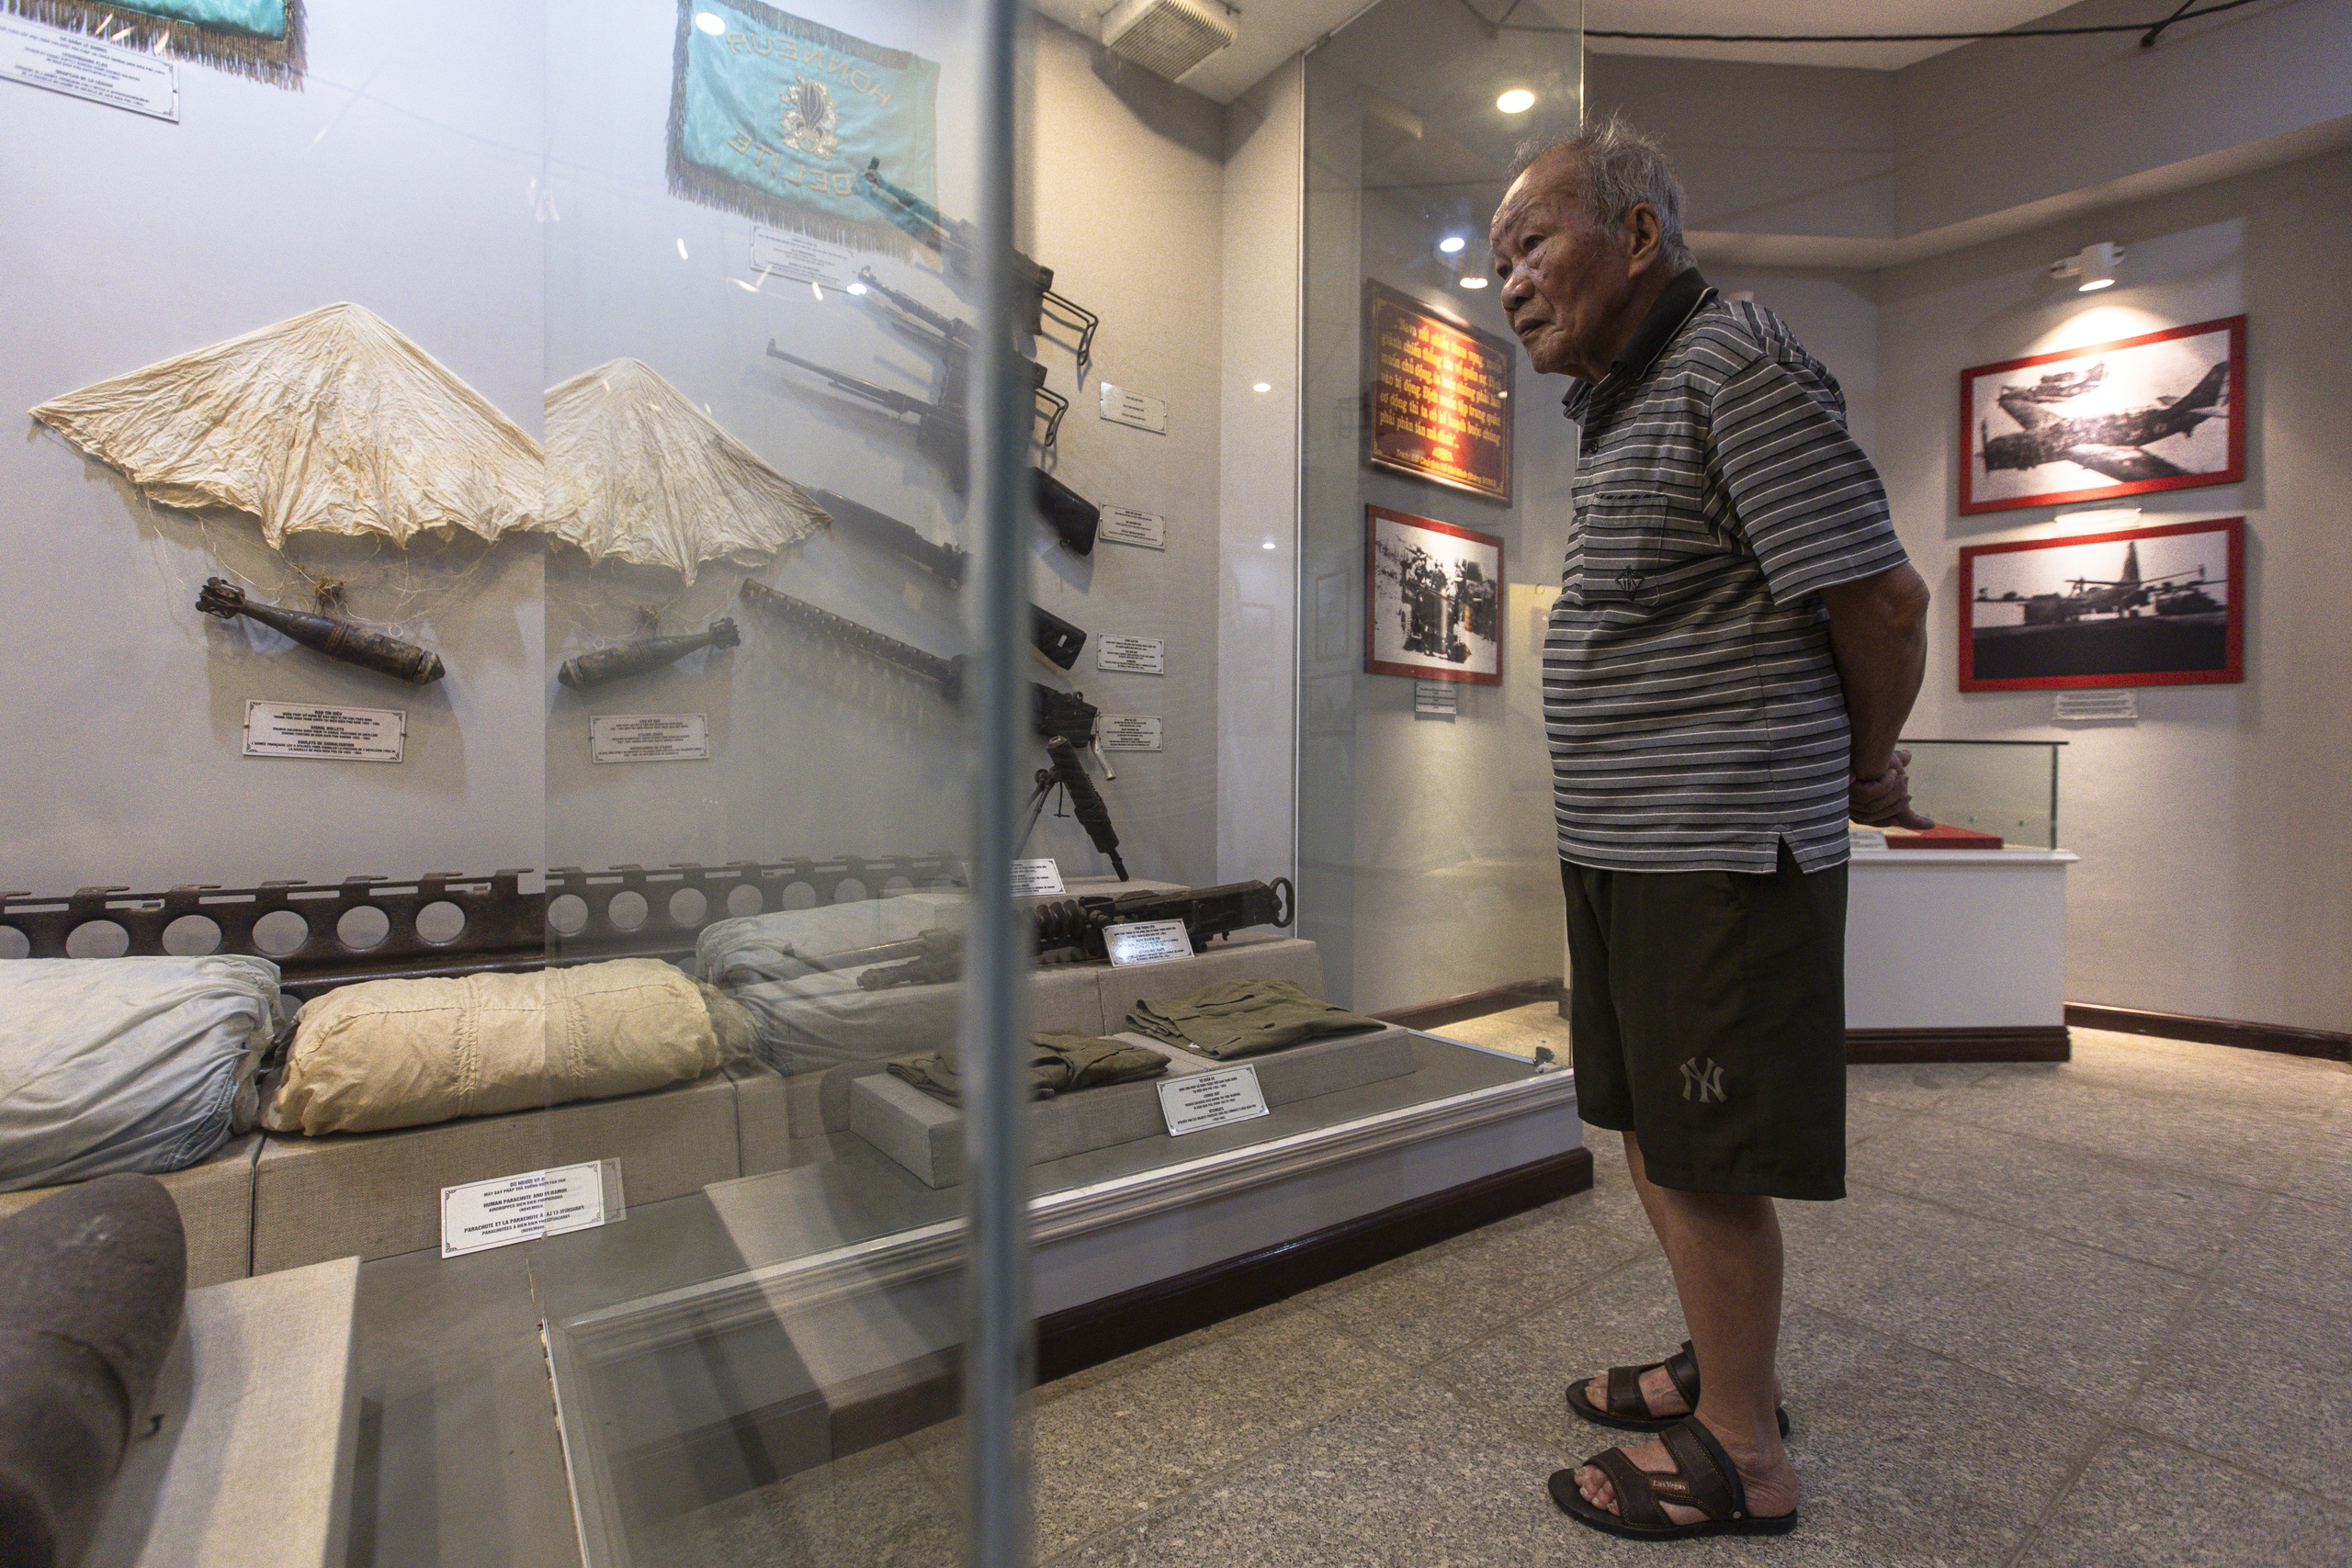 Tuy tuổi đã cao, nhưng ông Nguyễn Vinh Phu (89 tuổi, Hà Giang) vẫn quyết tâm tới Điện Biên để thăm lại chiến trường xưa. Trong chuyến tham quan lần này, ông đặc biệt xúc động khi được chứng kiến lại những mô phỏng, hiện vật tại Bảo tàng chiến thắng lịch sử Điện Biên Phủ